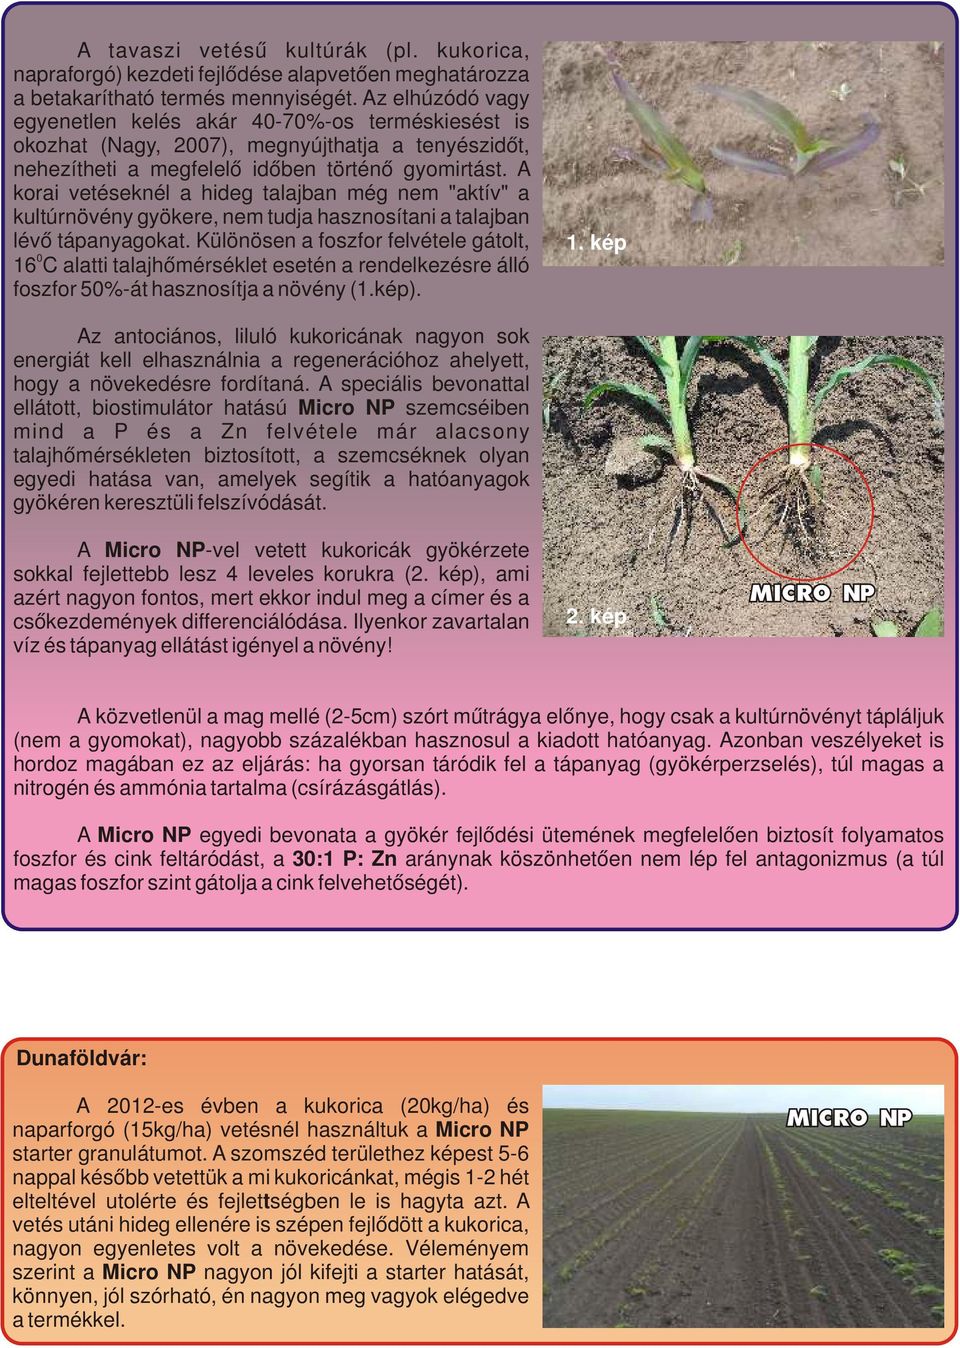 A korai vetéseknél a hideg talajban még nem "aktív" a kultúrnövény gyökere, nem tudja hasznosítani a talajban lévő tápanyagokat.